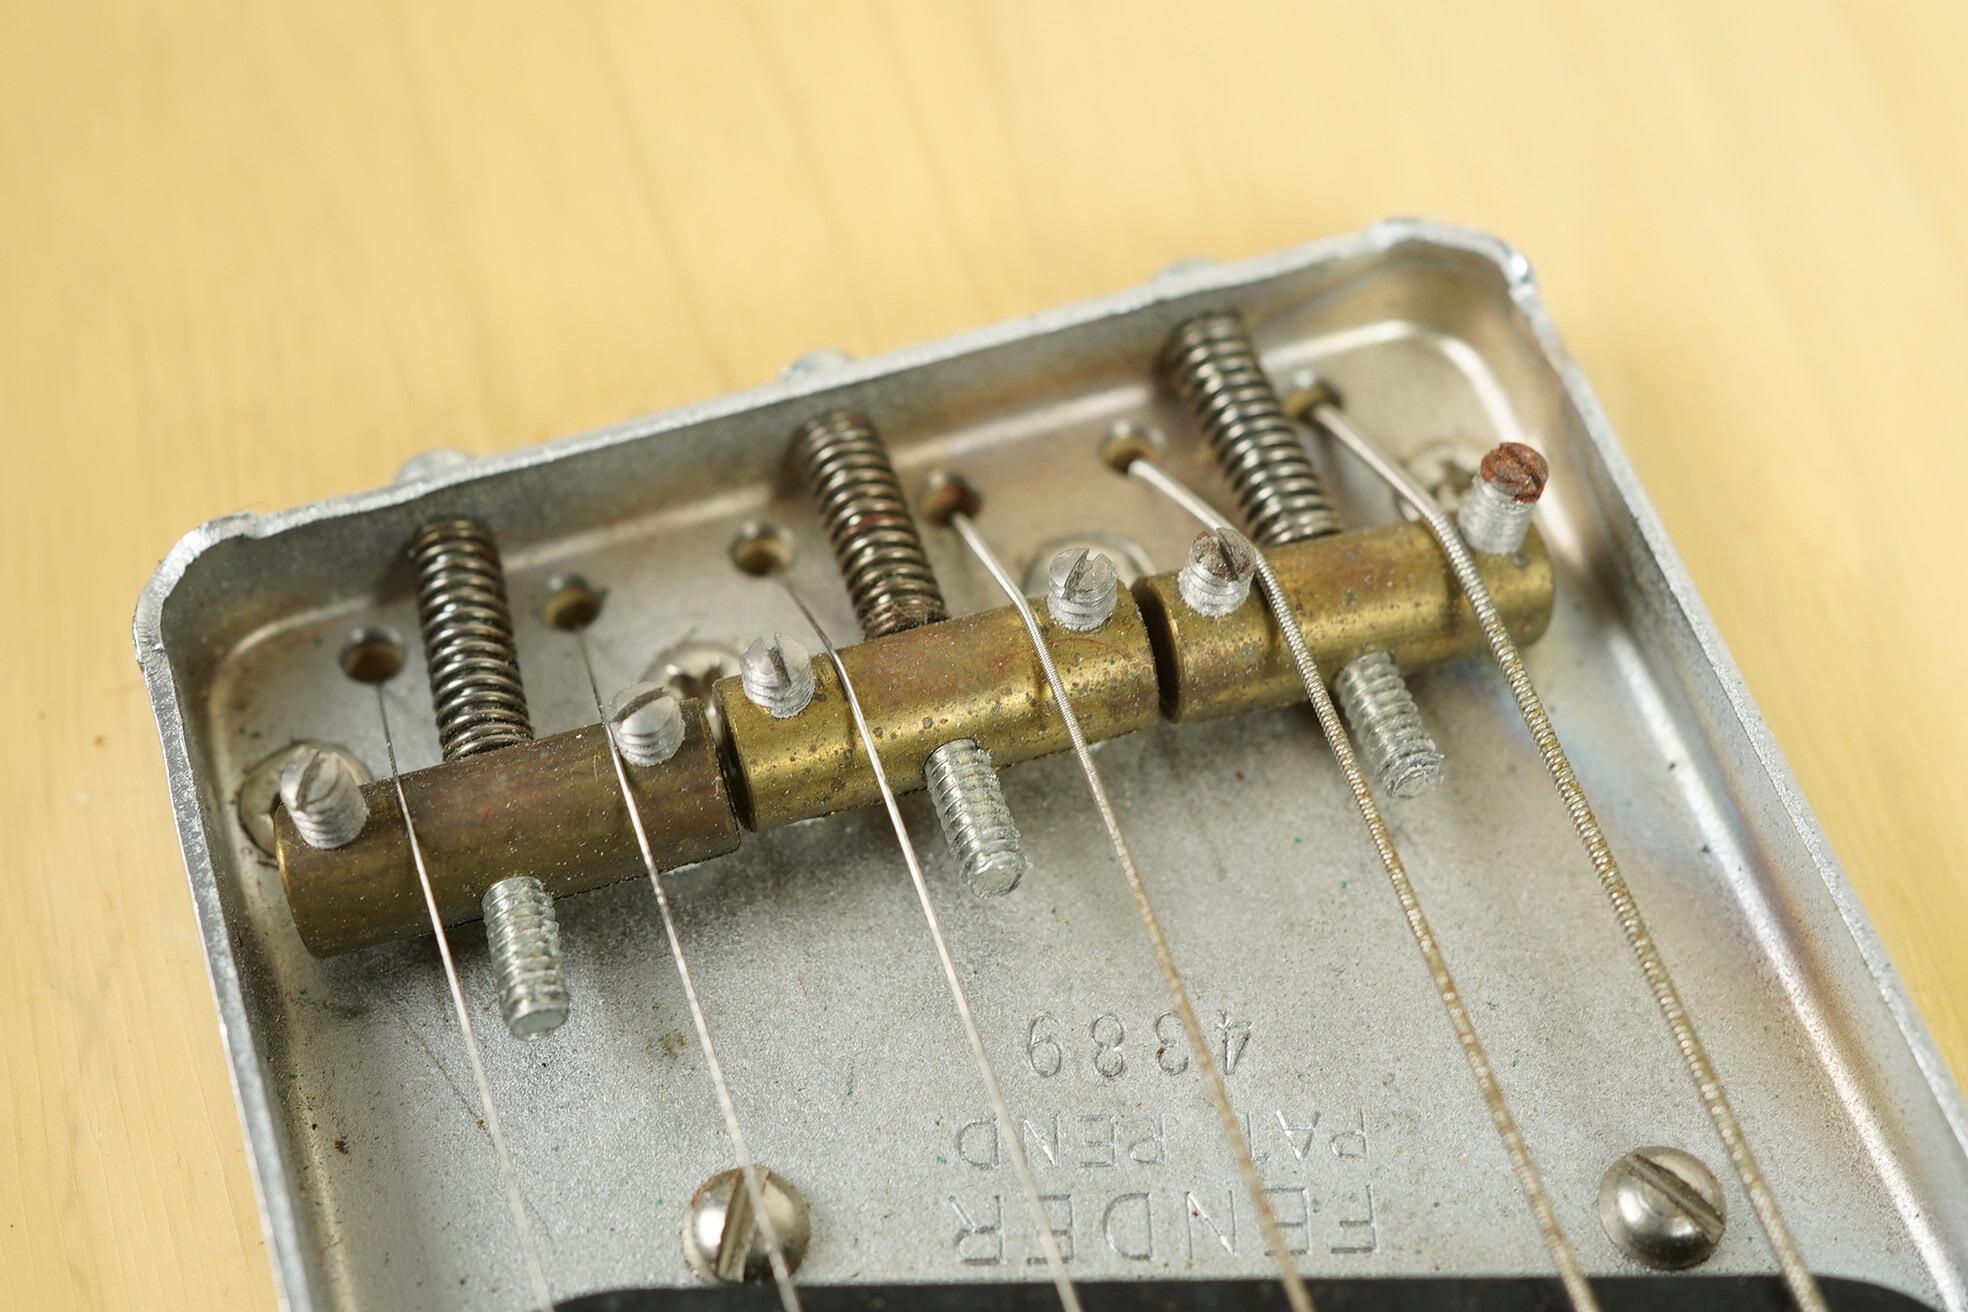 1952 Fender Telecaster